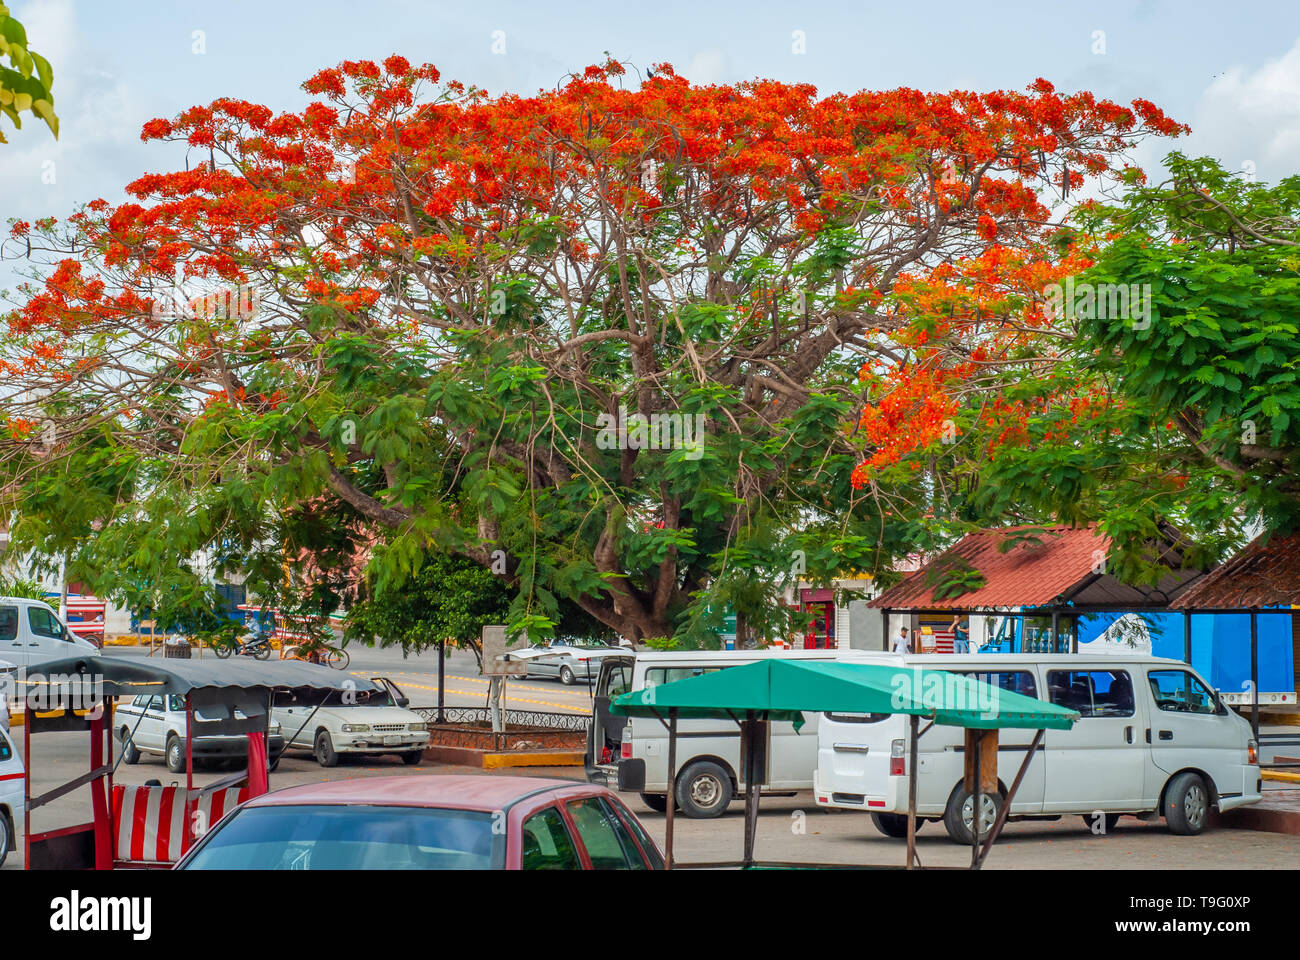 La ville mexicaine, avec Delonix regia arbre, avec des fleurs rouges, sur la péninsule du Yucatan Banque D'Images